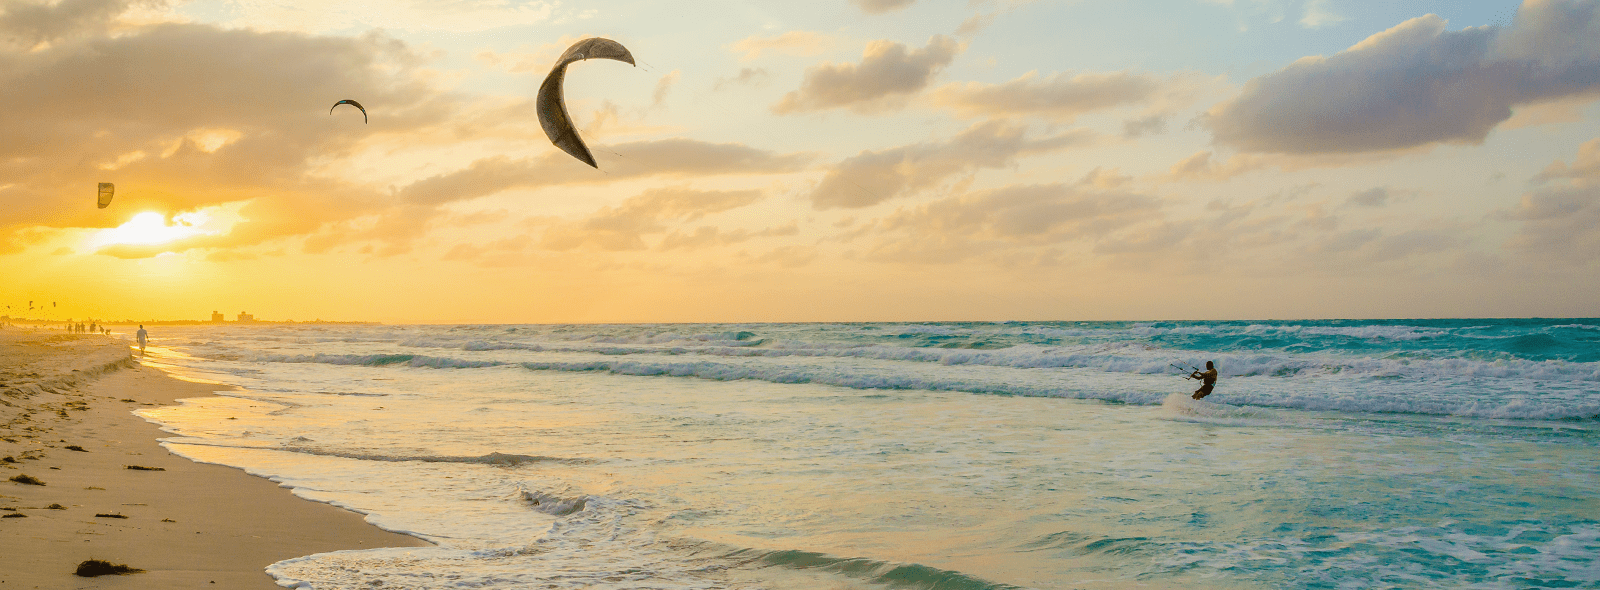 Partez rider en kitesurf ou en windsurf en république dominicaine sur l'un de nos spots !